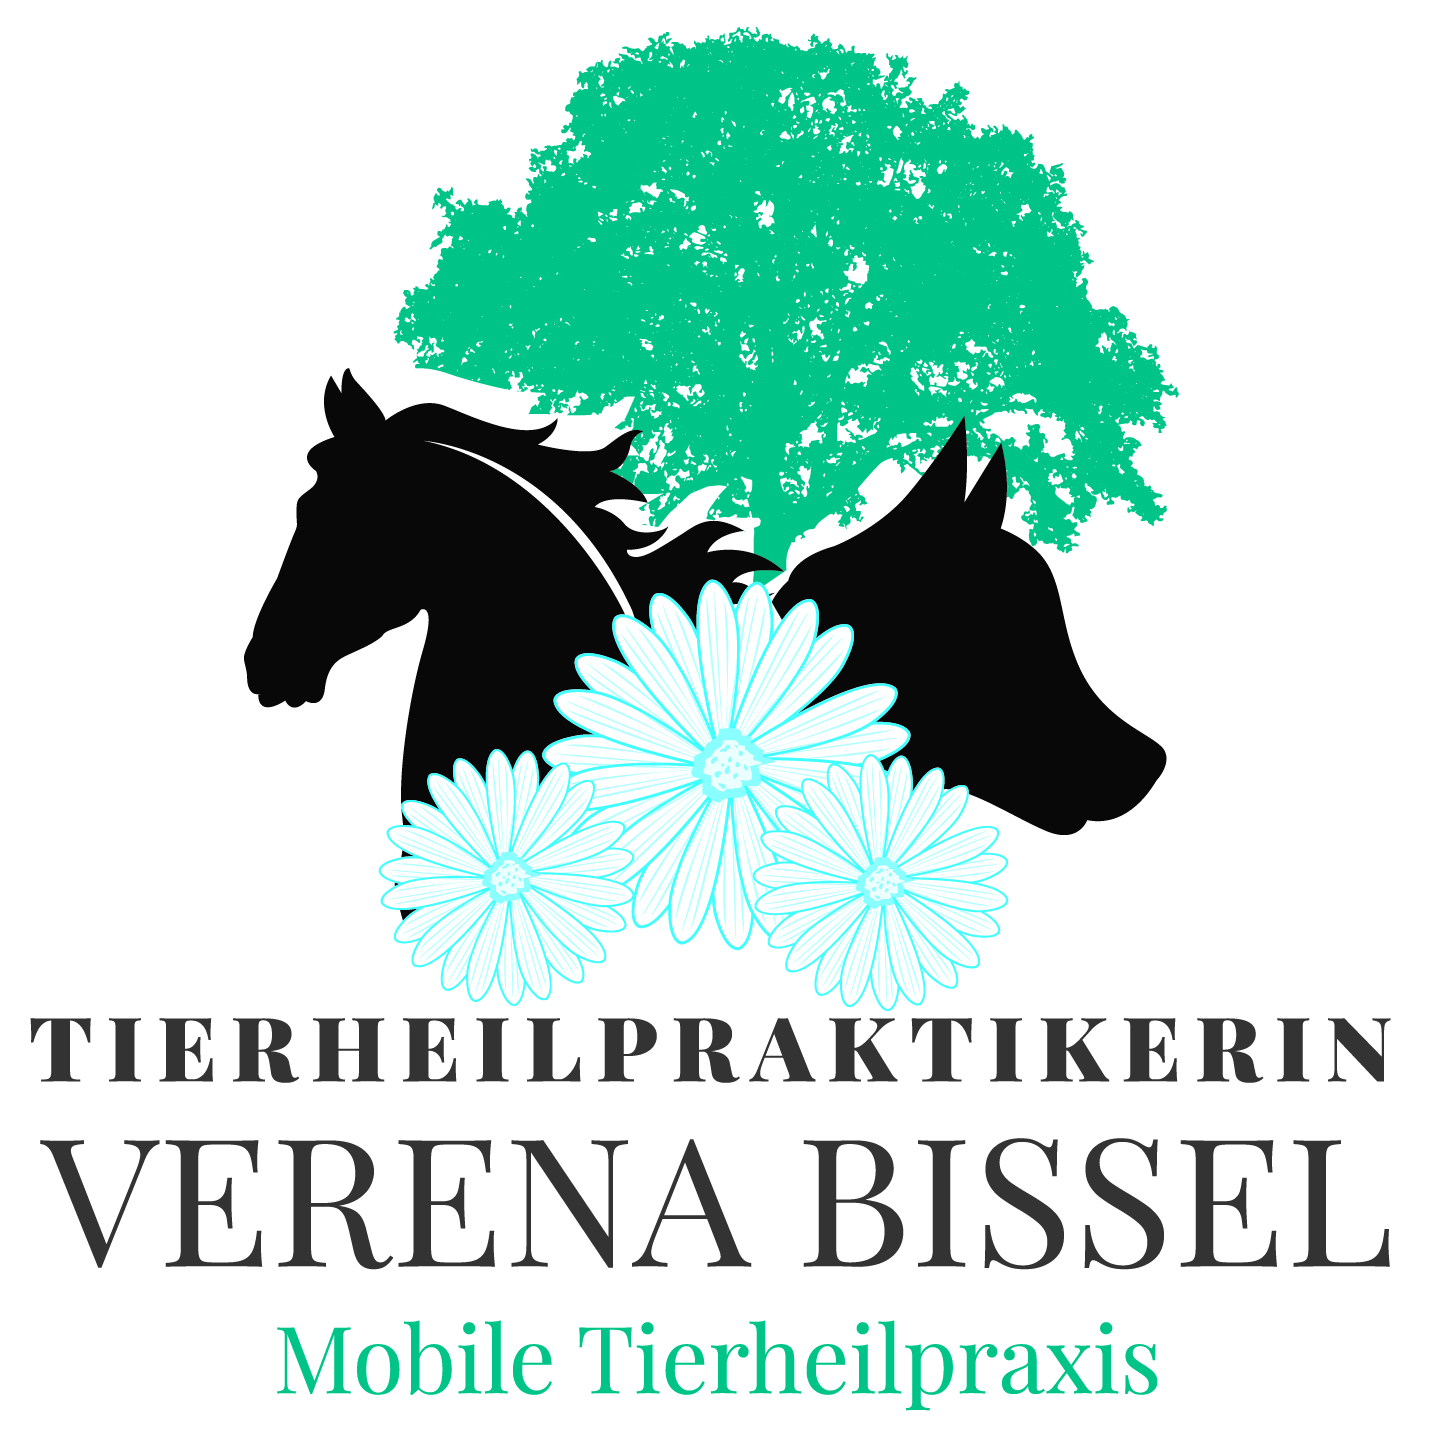 Mobile Tierheilpraxis Verena Bissel